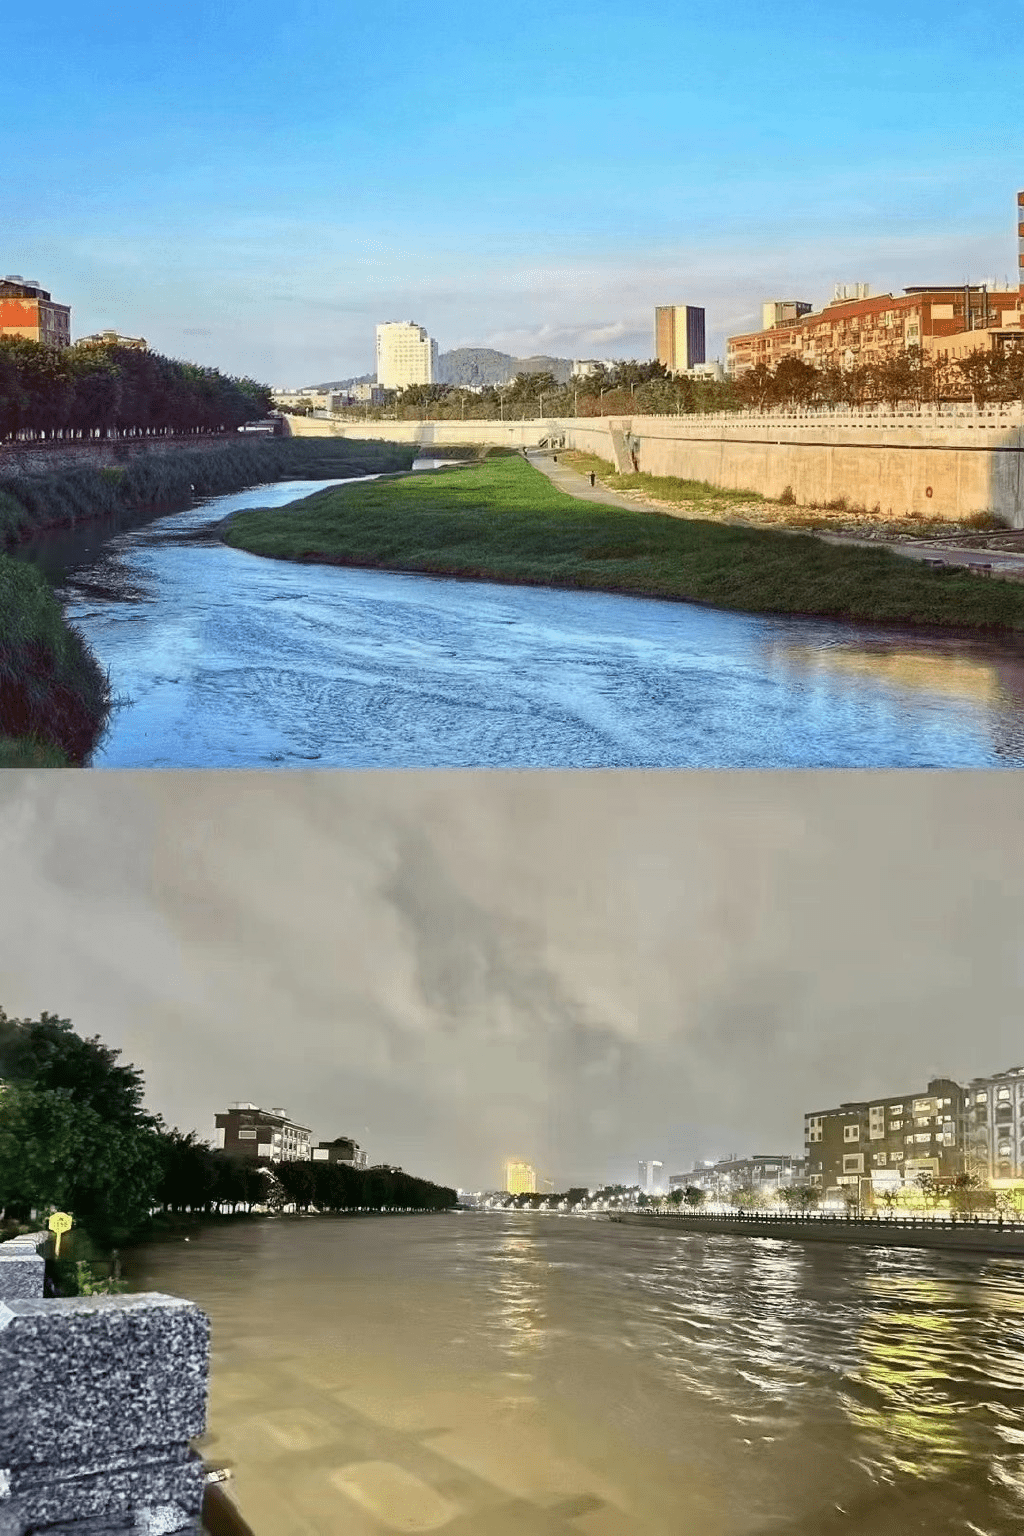 网民发布照片显示深圳一地区水浸前后比较。